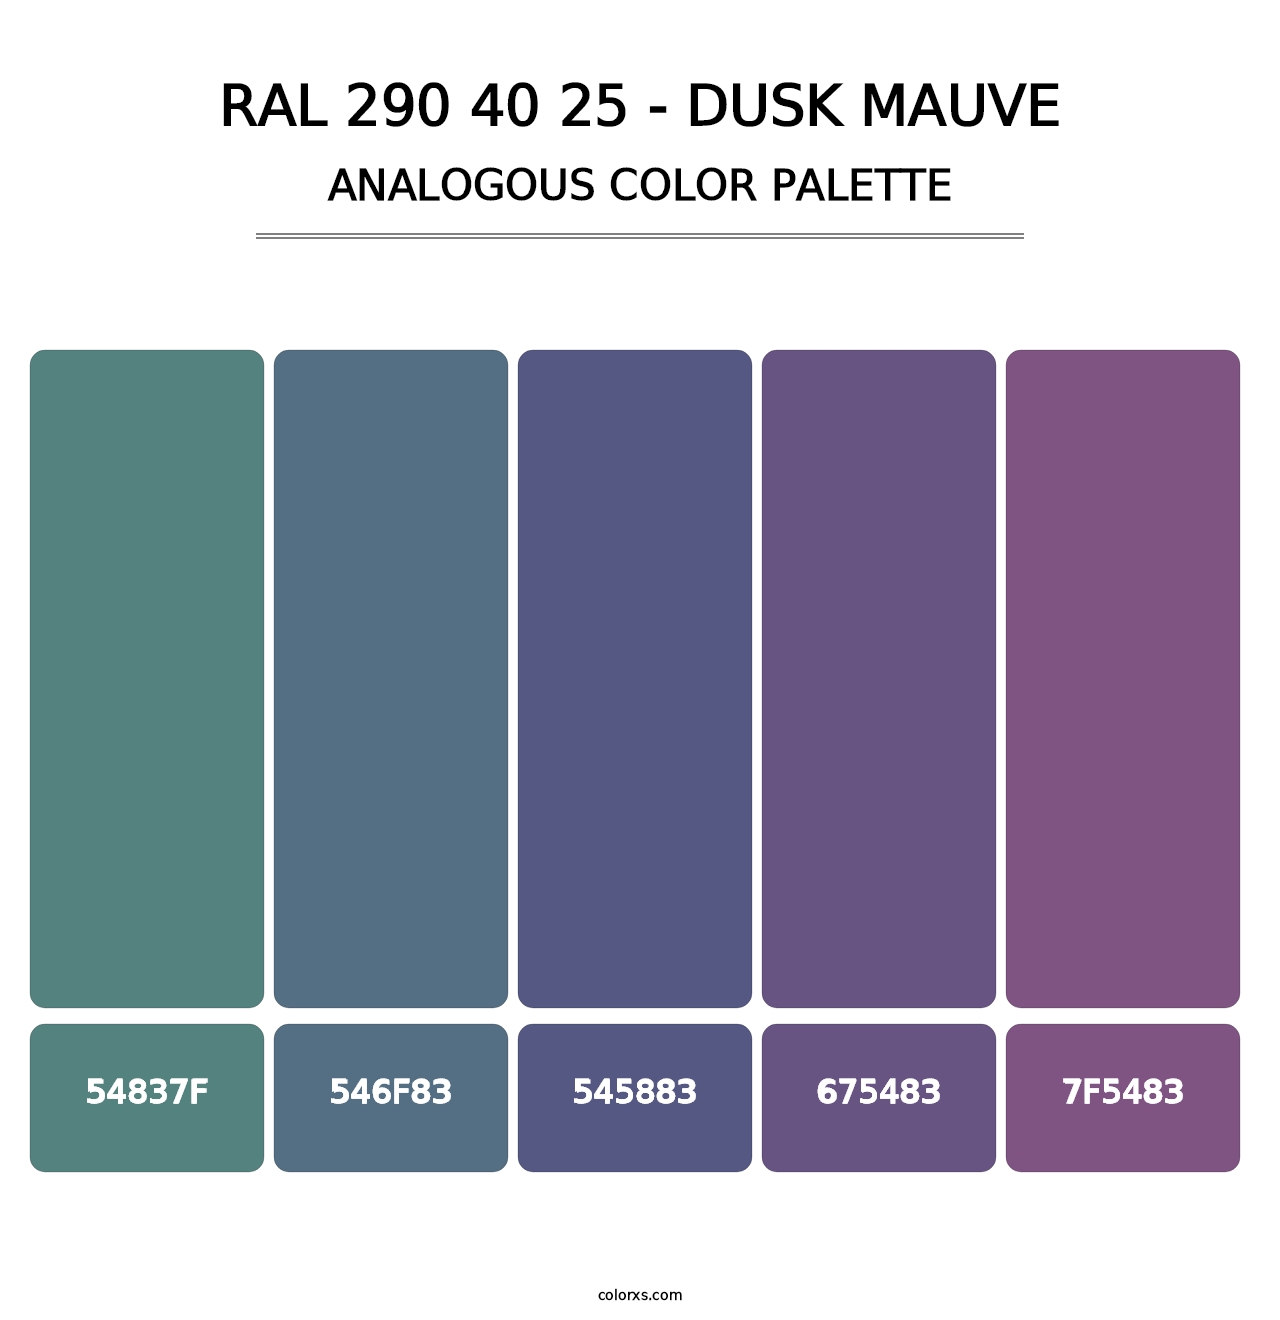 RAL 290 40 25 - Dusk Mauve - Analogous Color Palette